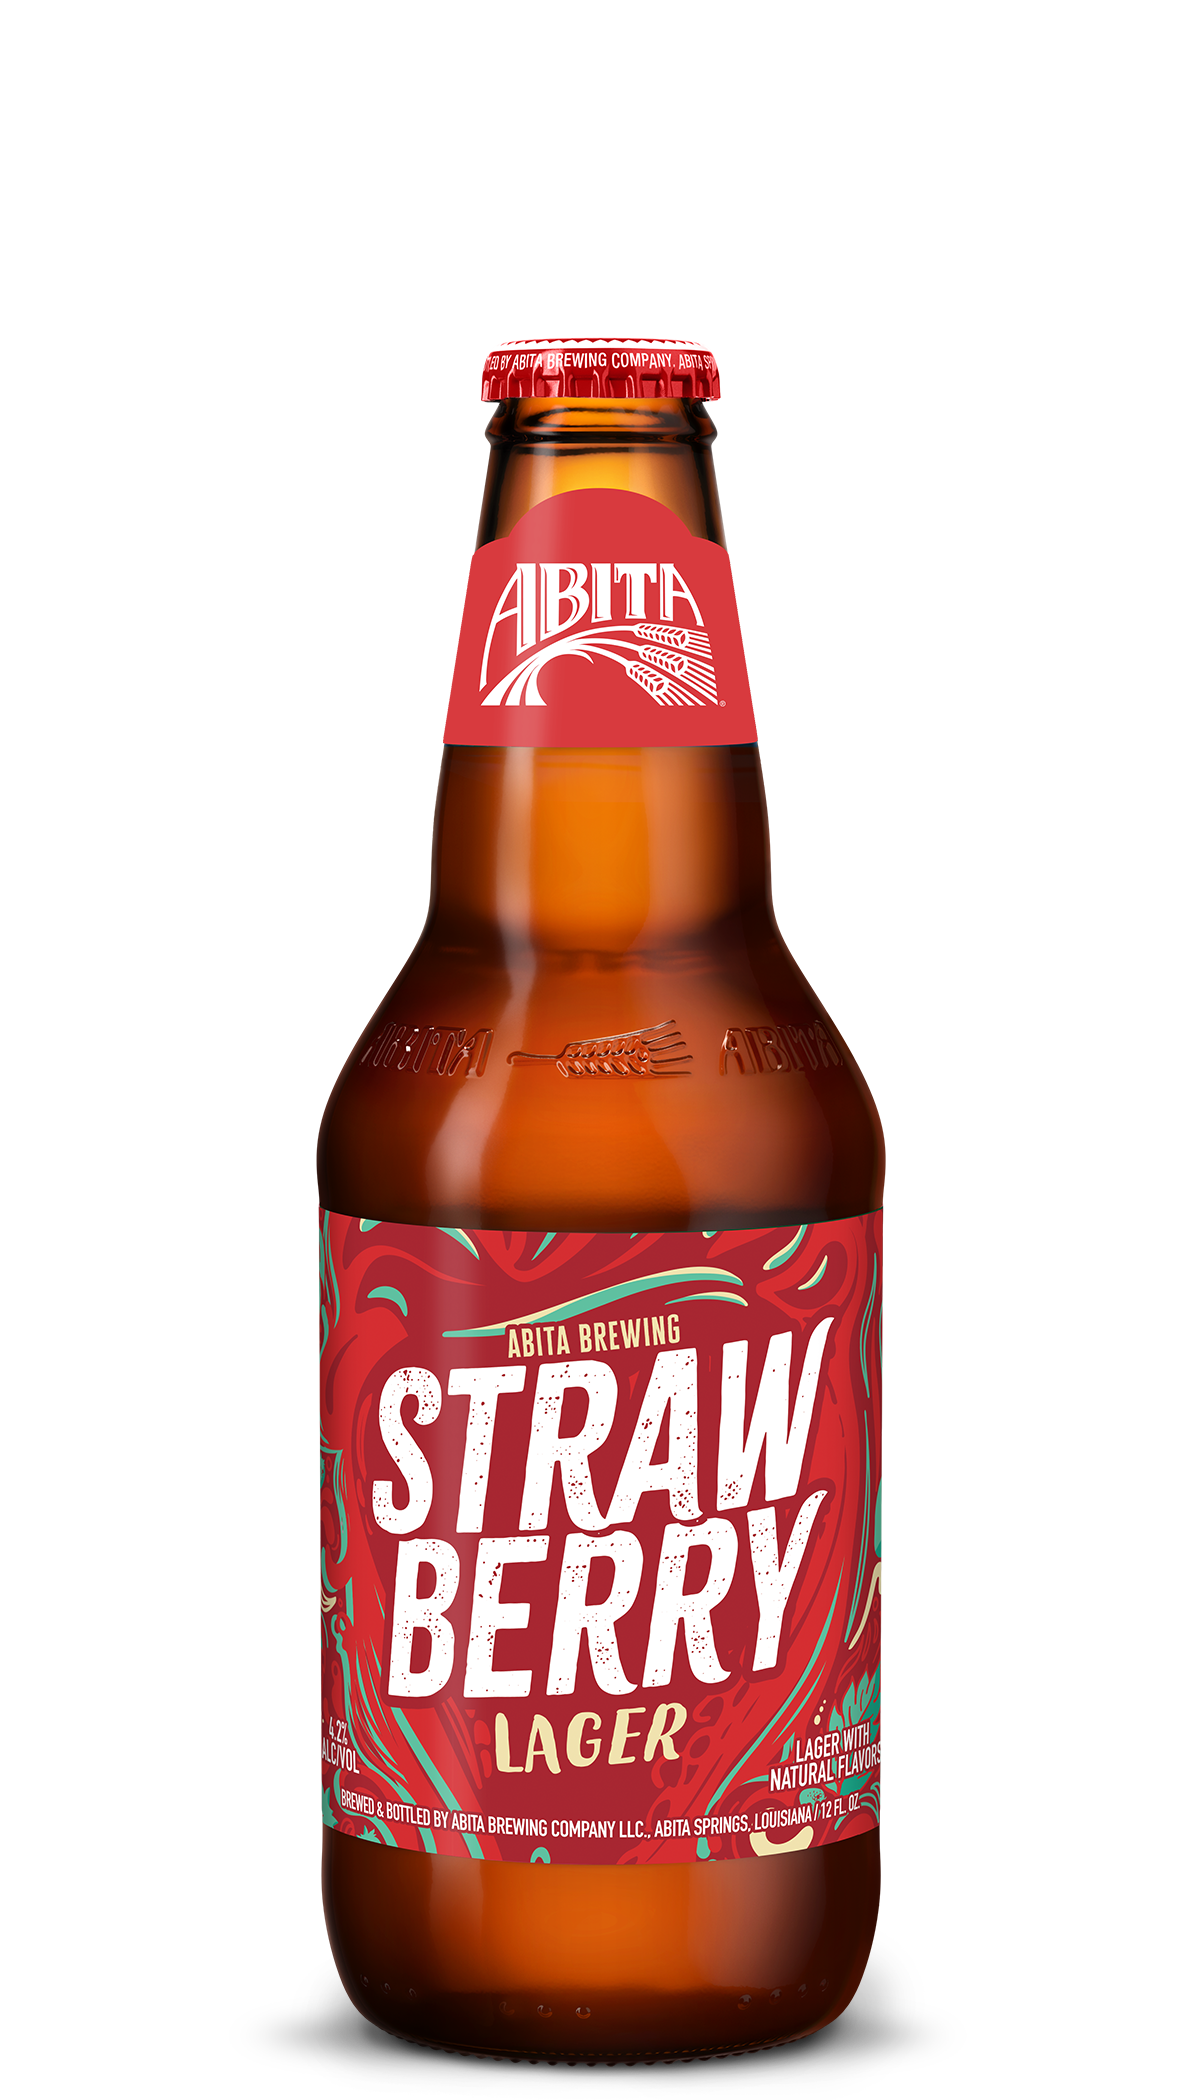 strawberry lager beer bottle